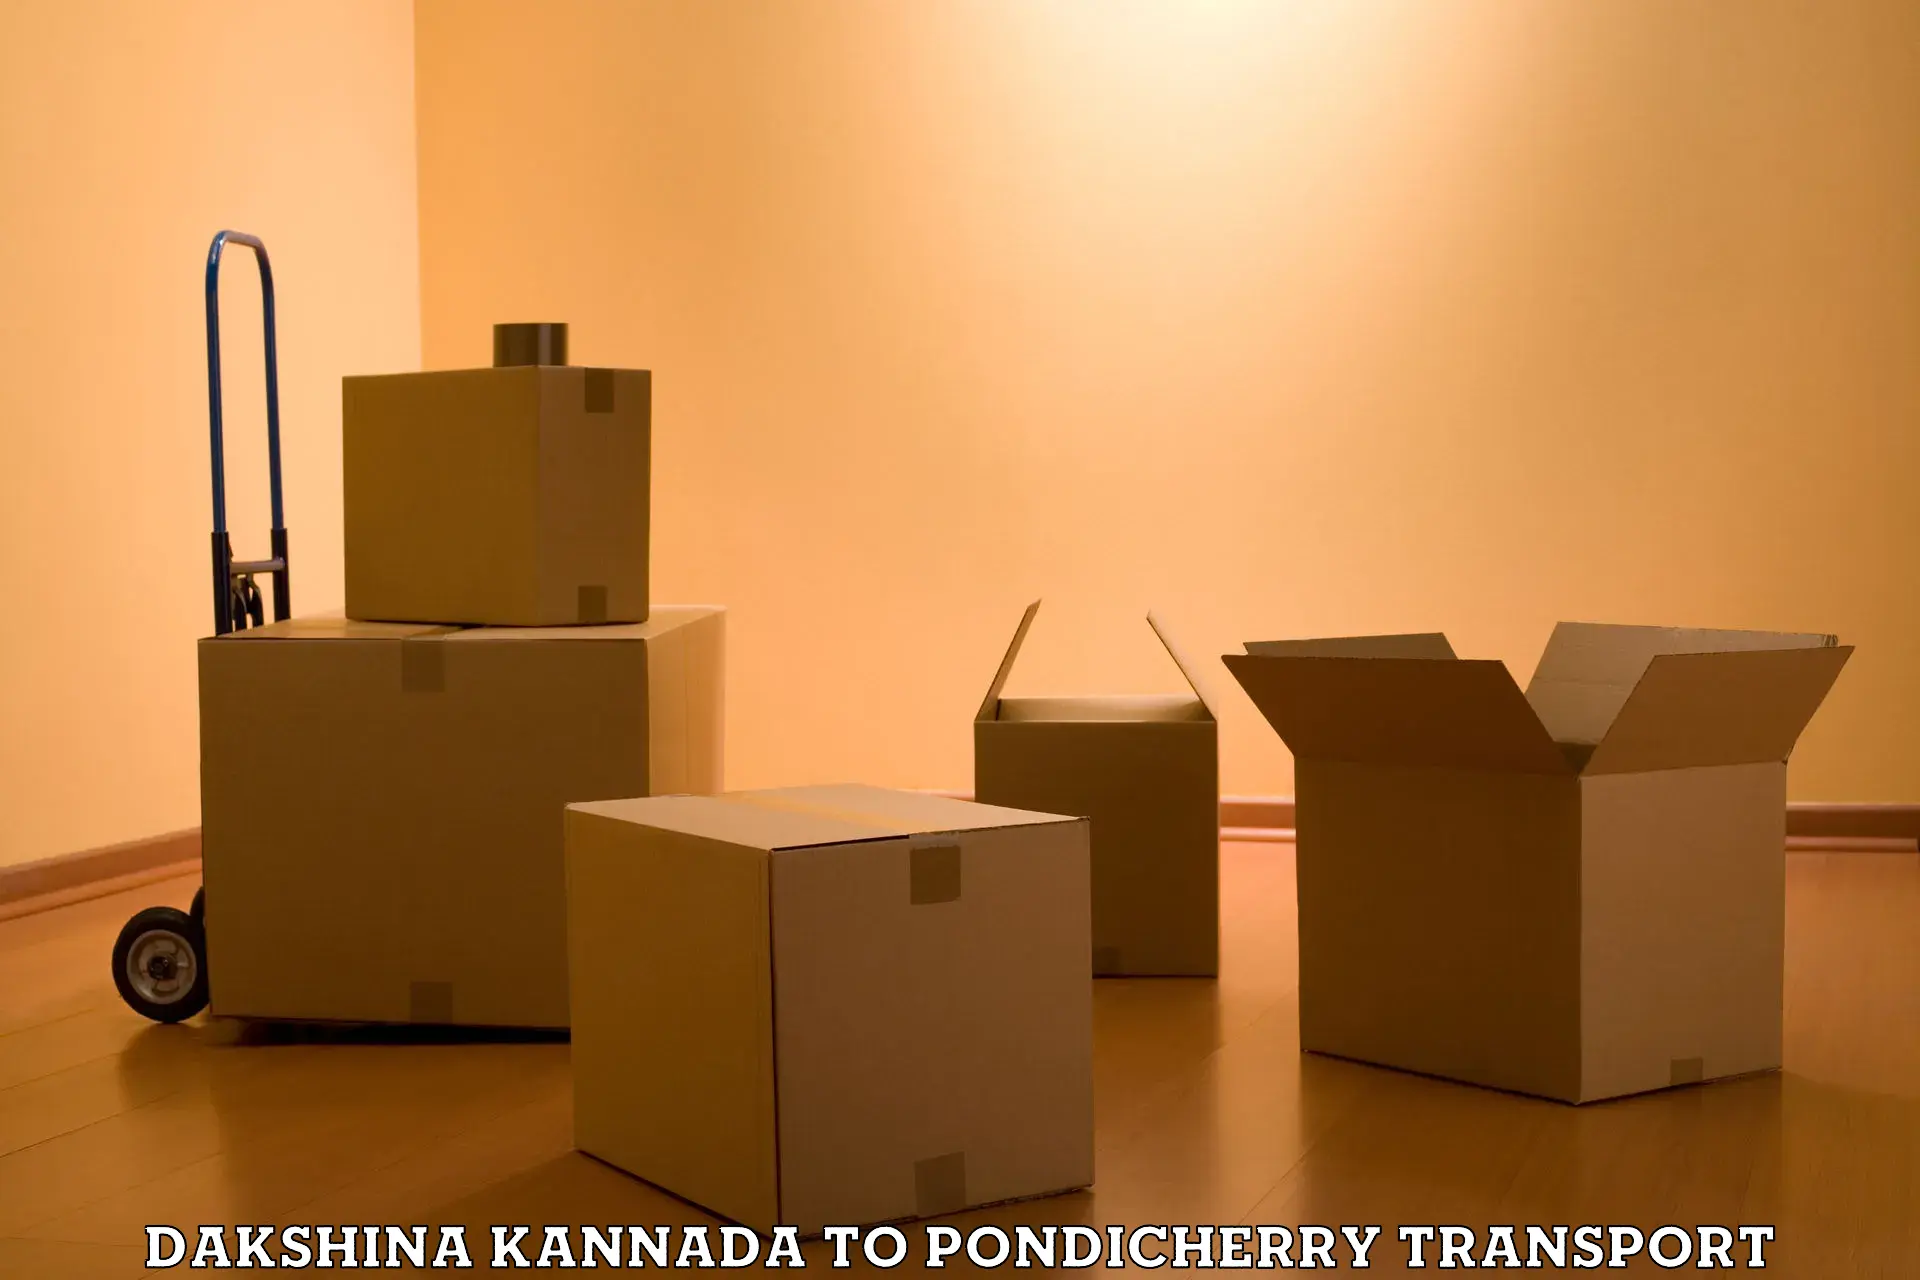 Nearby transport service Dakshina Kannada to Pondicherry